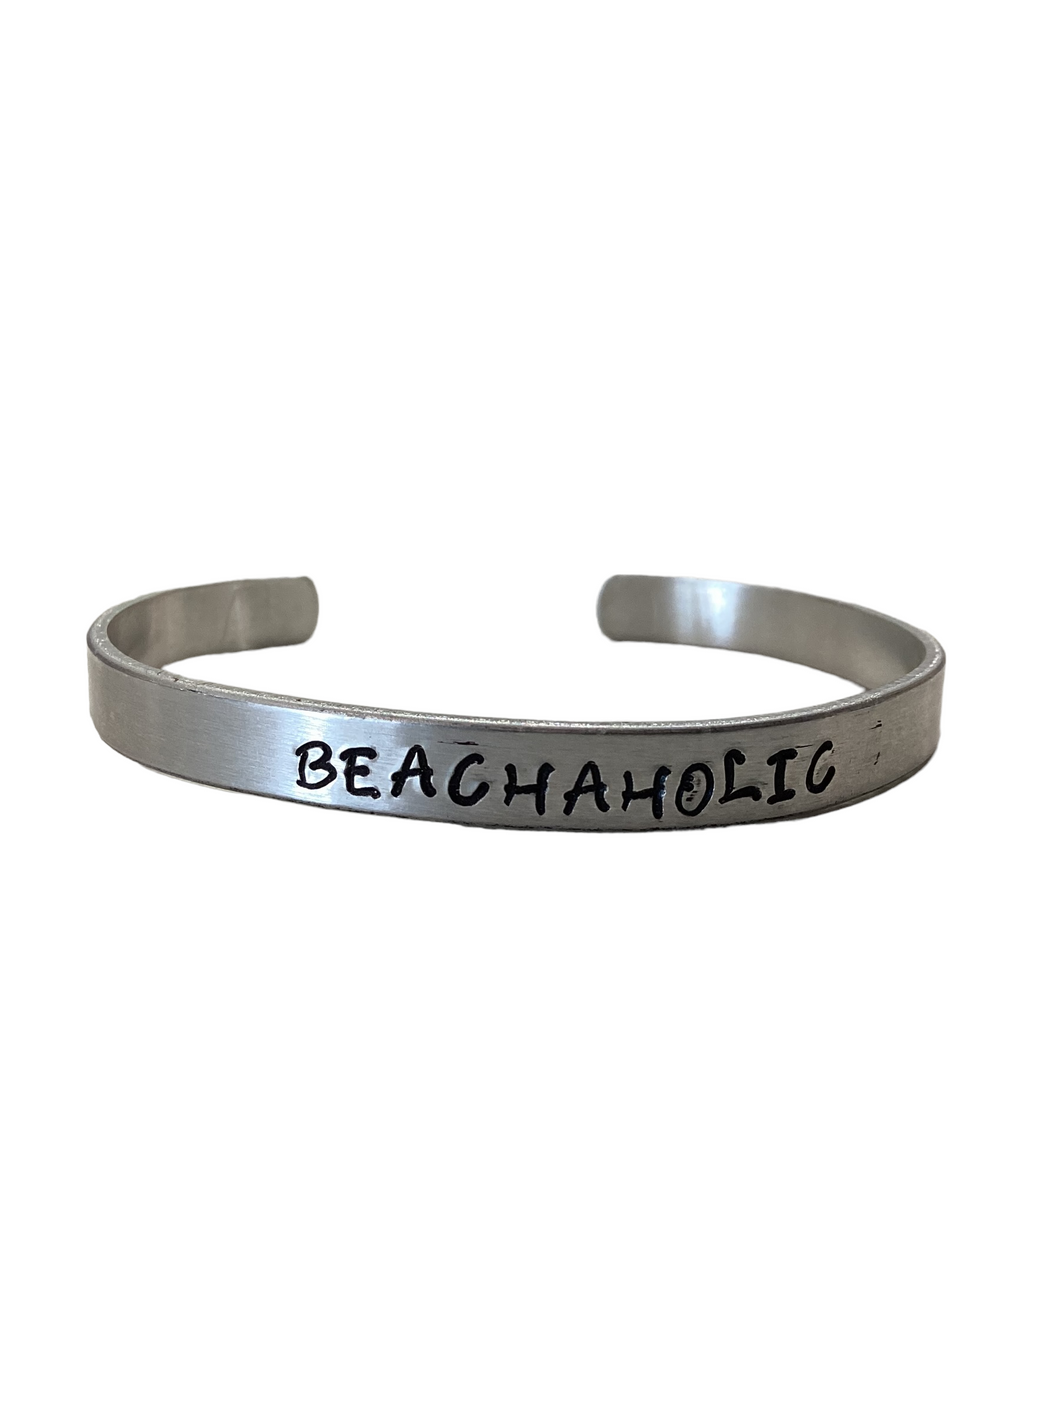 Beachaholic Bracelet